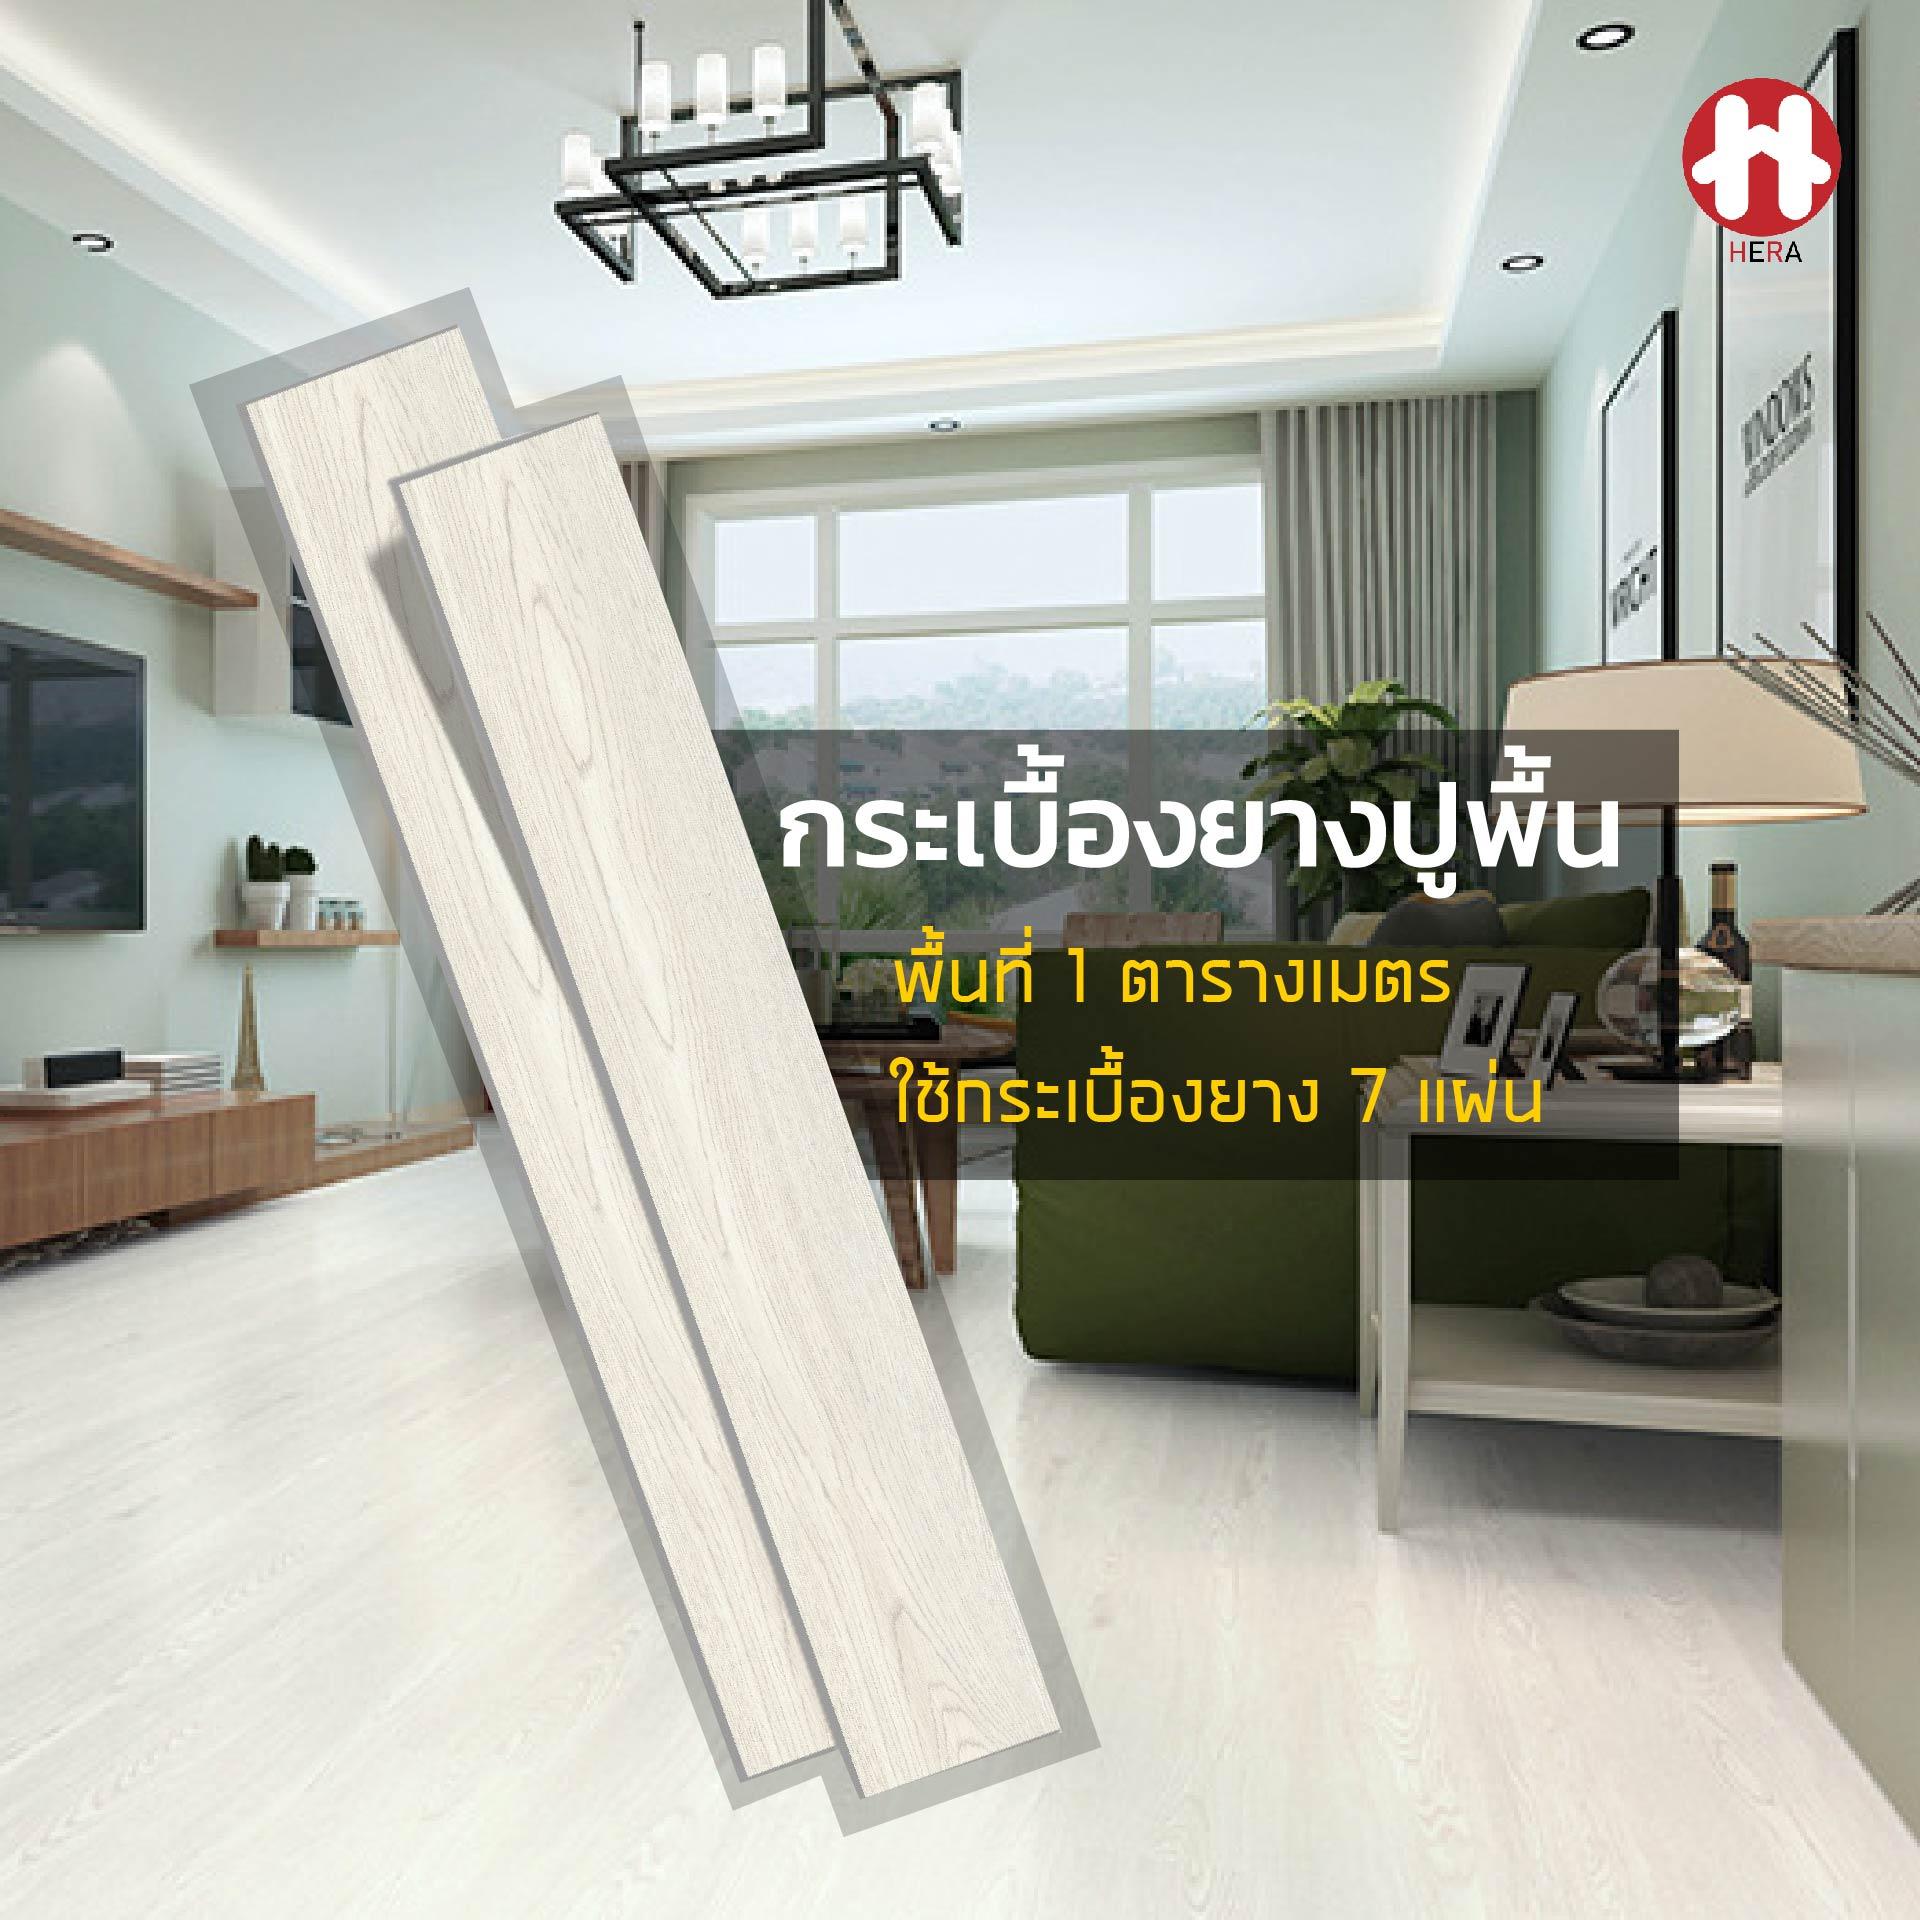 From Thailandกระเบื้องยางลายไม้ขาวกาวในตัว พื้นที่ 1 ตารางเมตร ยาว91.4x15.2 cm หนา 1.8 มม. พื้นกระเบื้องยาง พื้น PVC สินค้าจริงเป็นขาวออกเทา